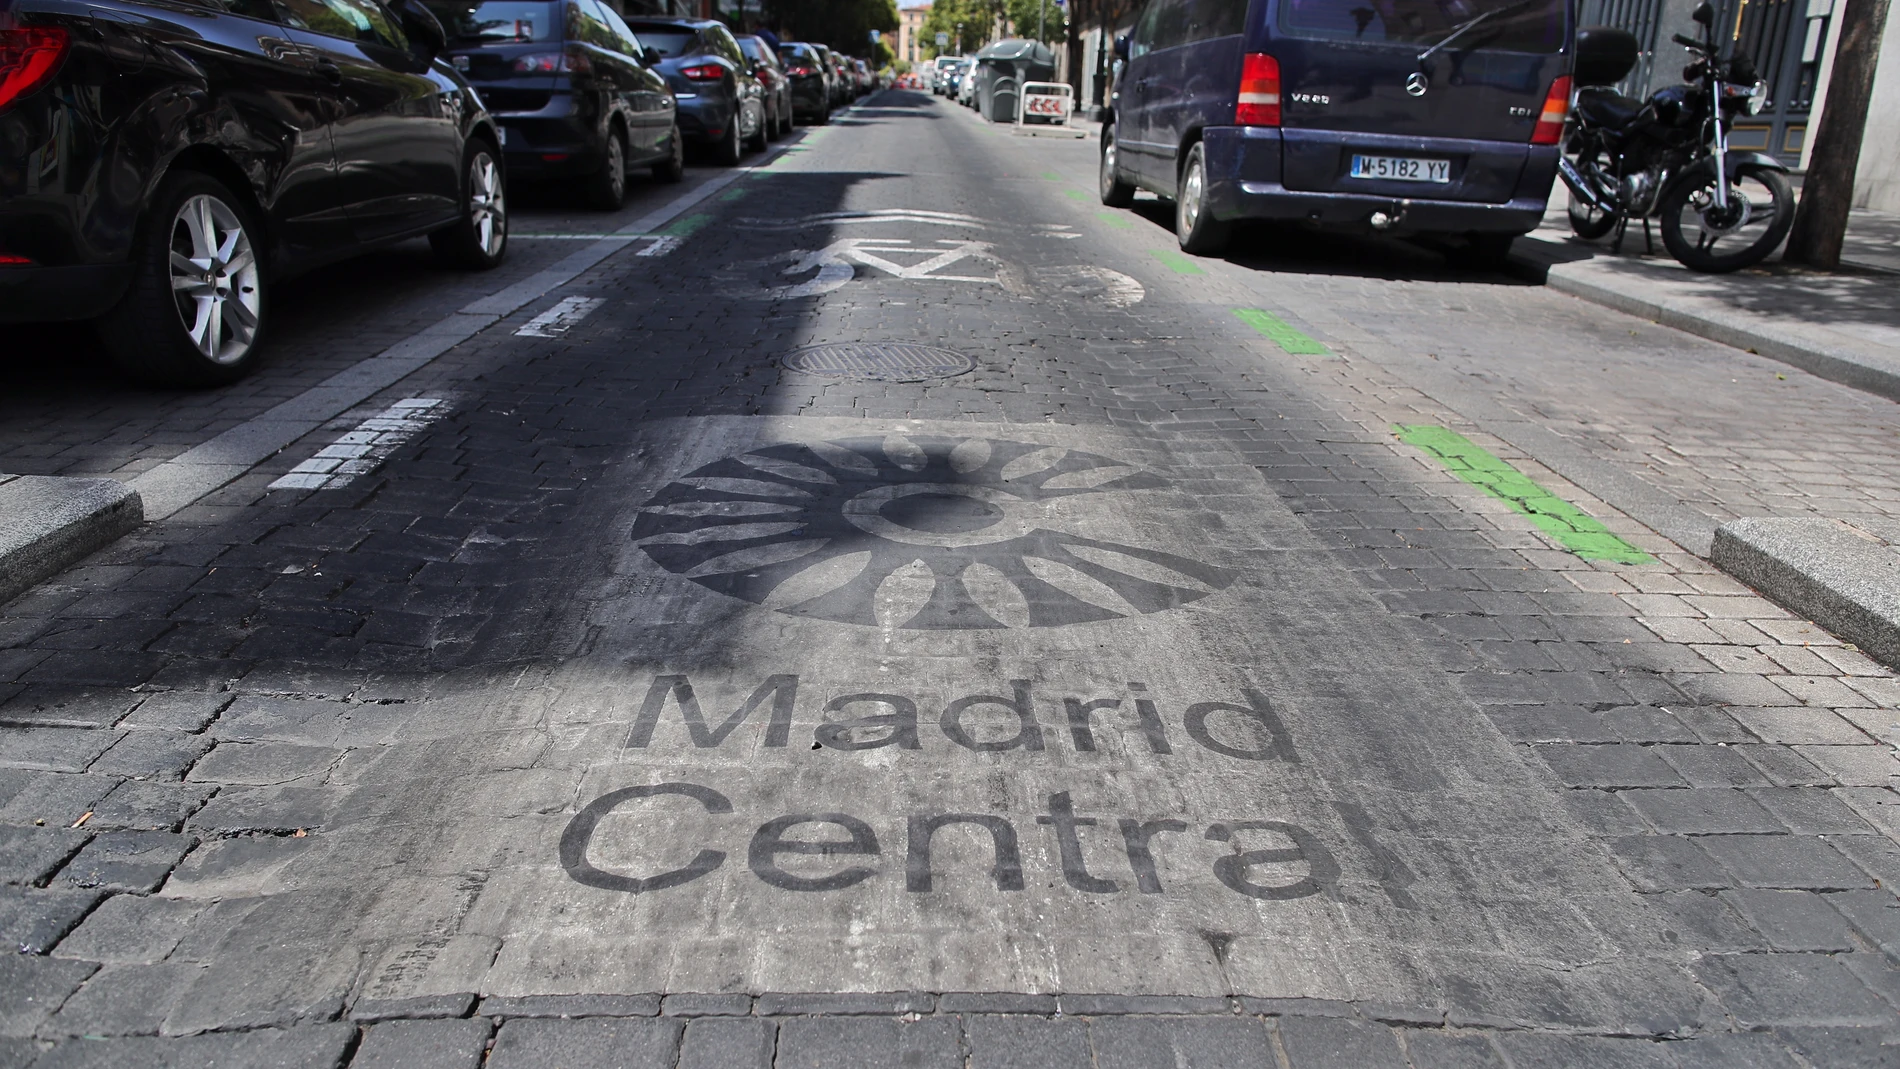 Distintivo de Madrid Central en Madrid